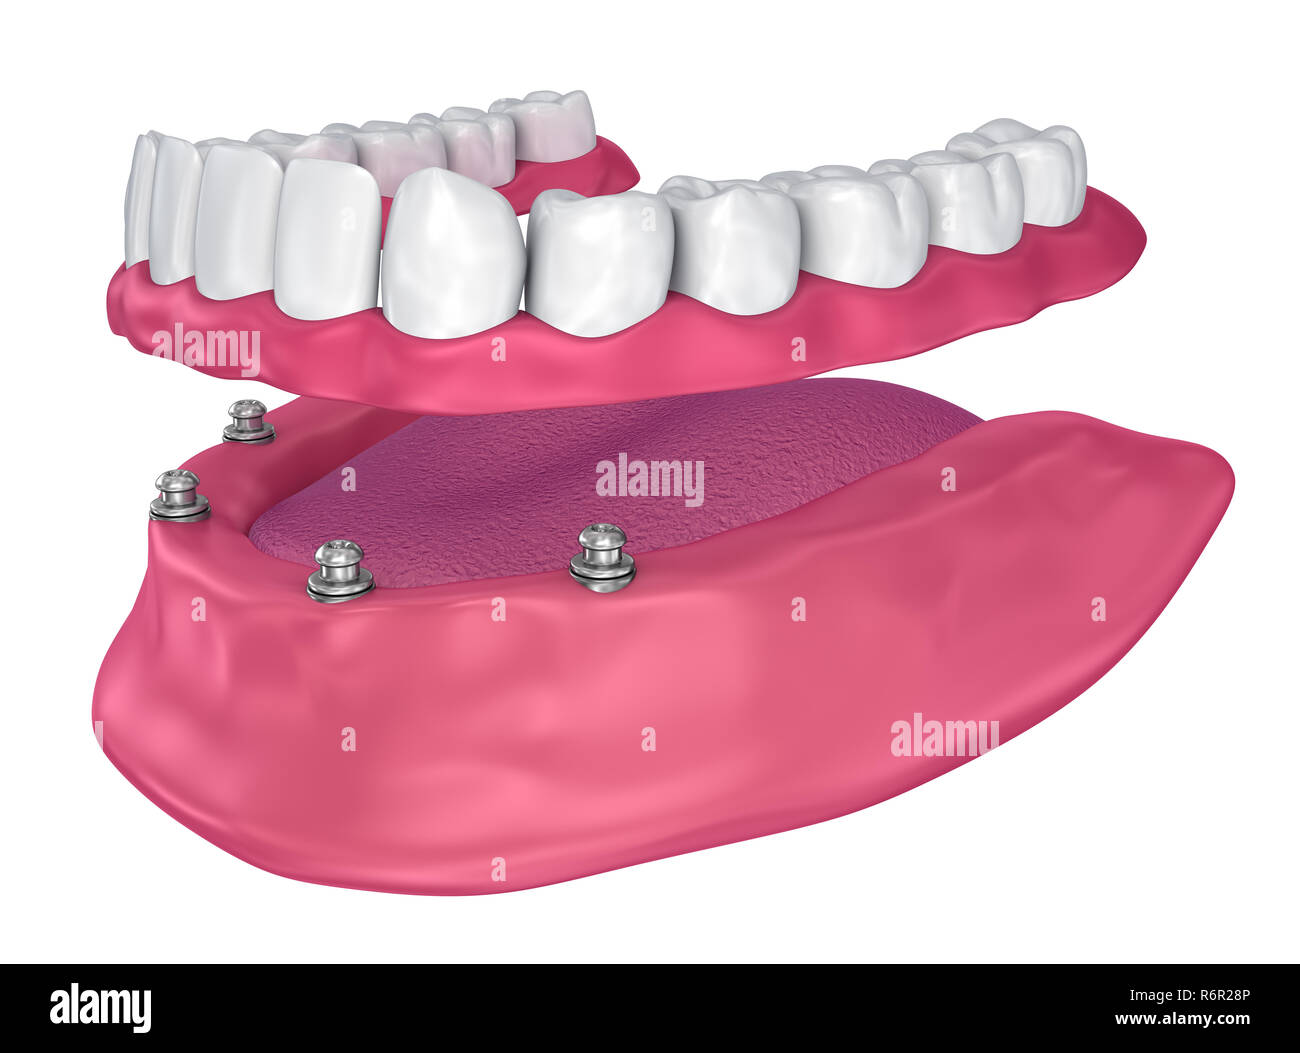 Pour Prothèse hybride être assis sur implants - ball pièces jointes. 3D illustration Banque D'Images